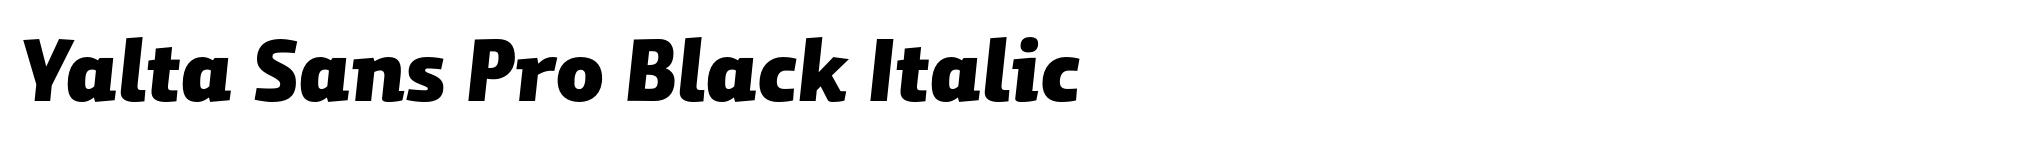 Yalta Sans Pro Black Italic image